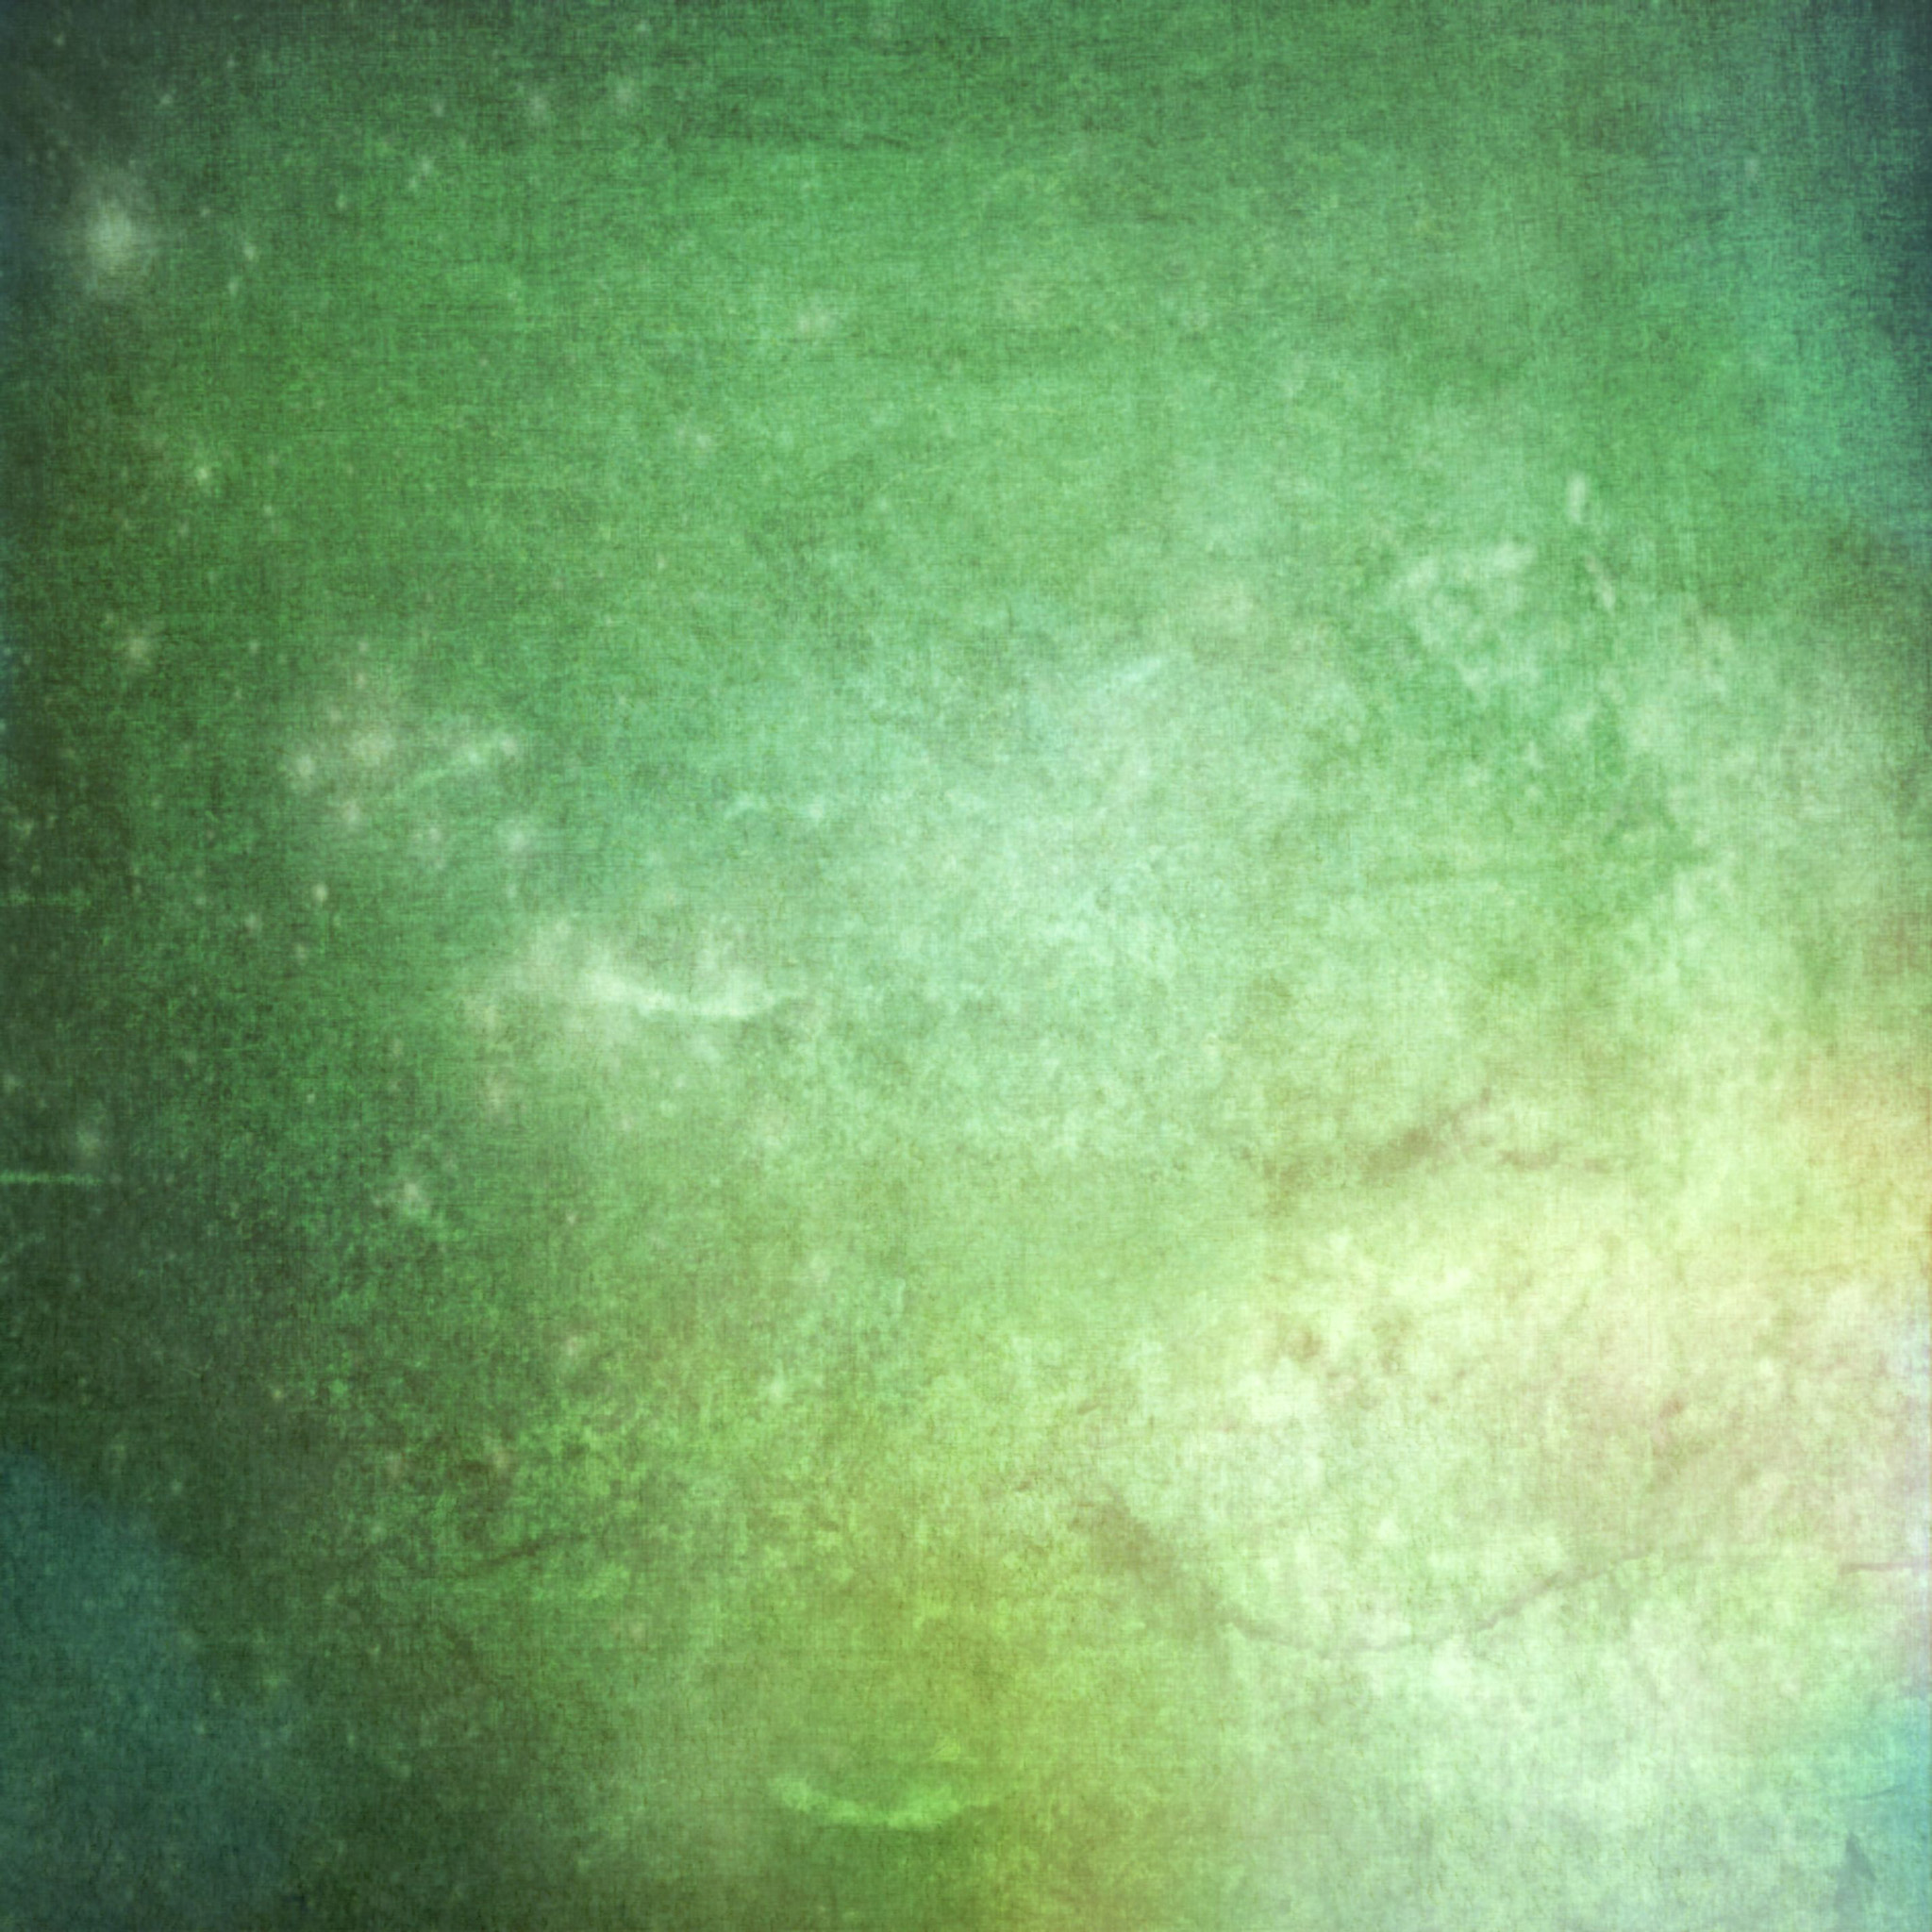 Gritty Green Texture Ipad Wallpaper - Green Texture - HD Wallpaper 